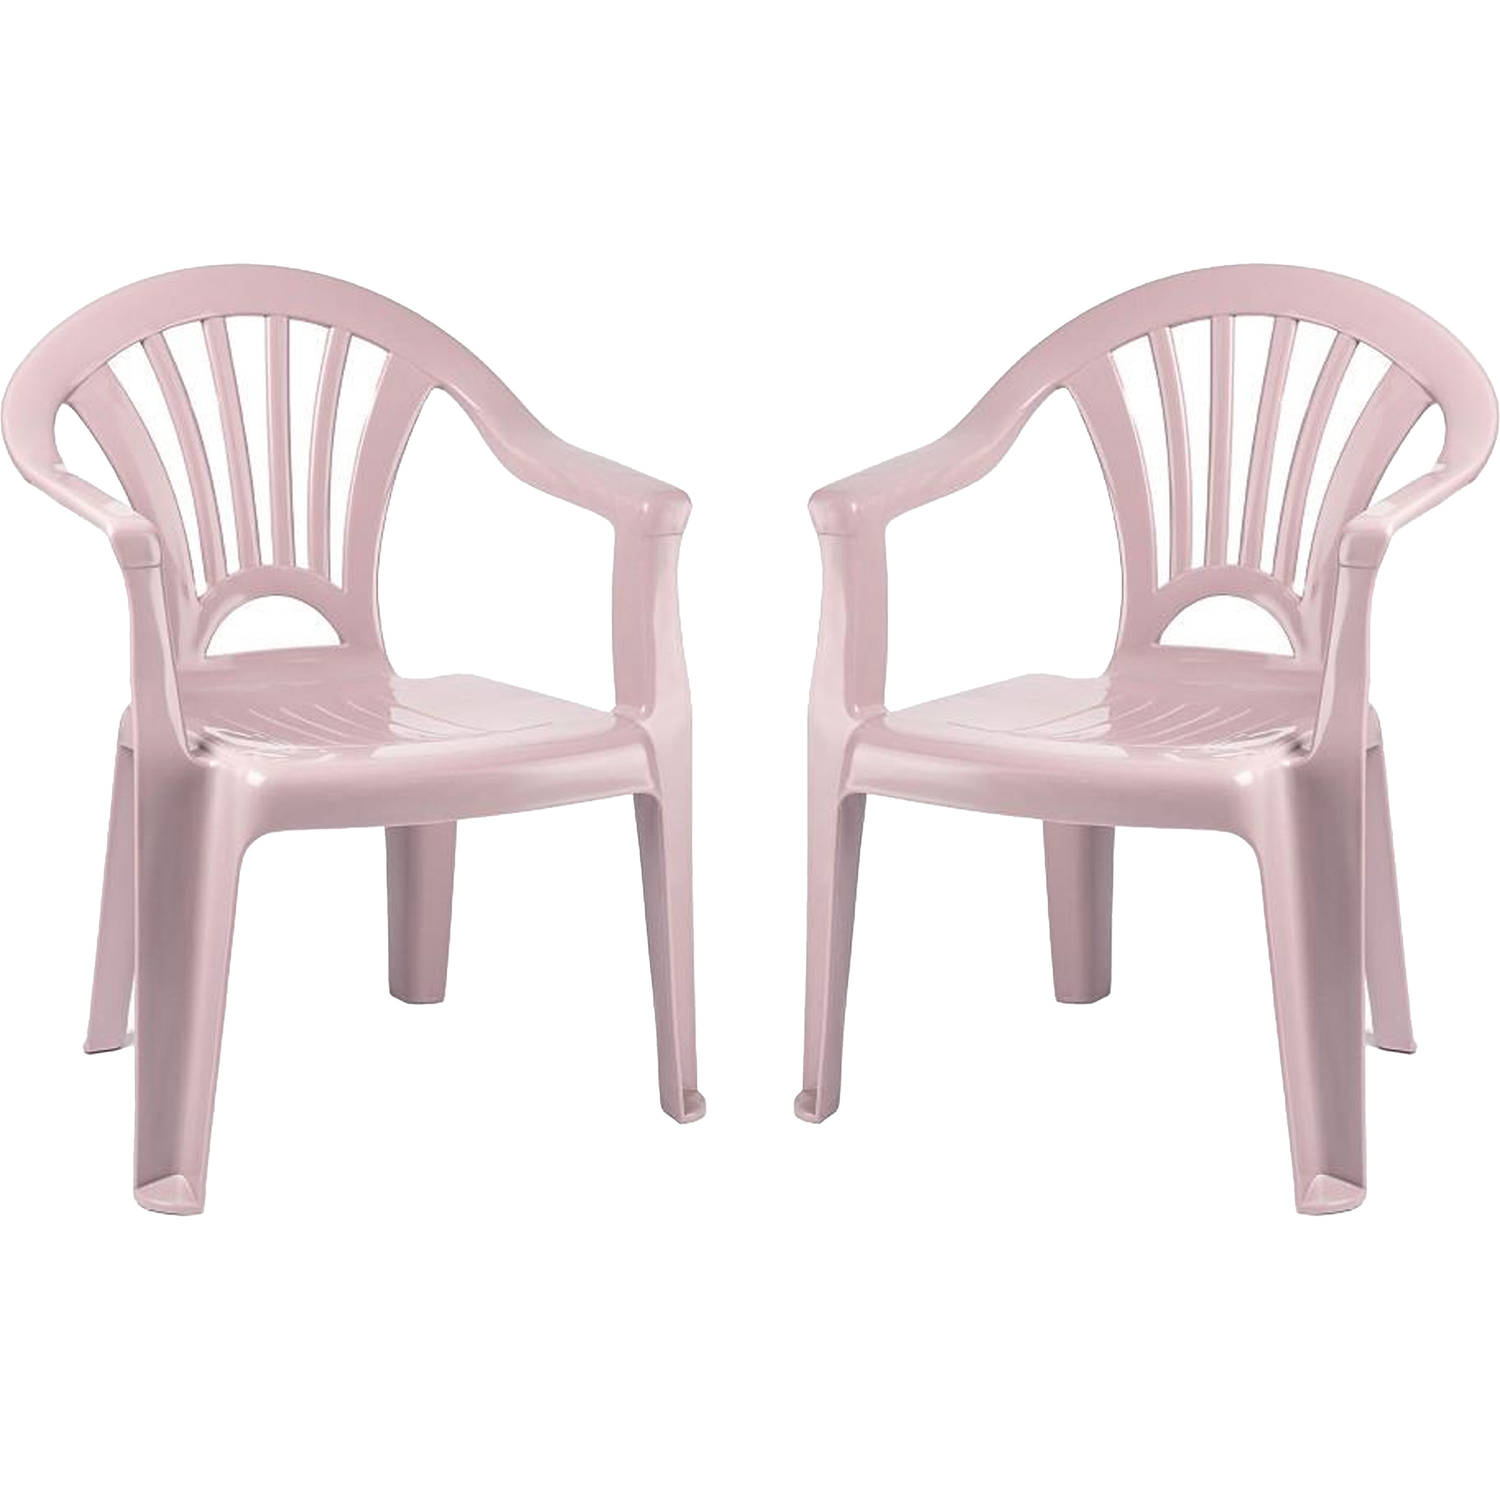 Plasticforte Kinderstoel 4x stuks kunststof roze 35 x 28 x 50 cm tuin-camping-slaapkamer Kinderstoel